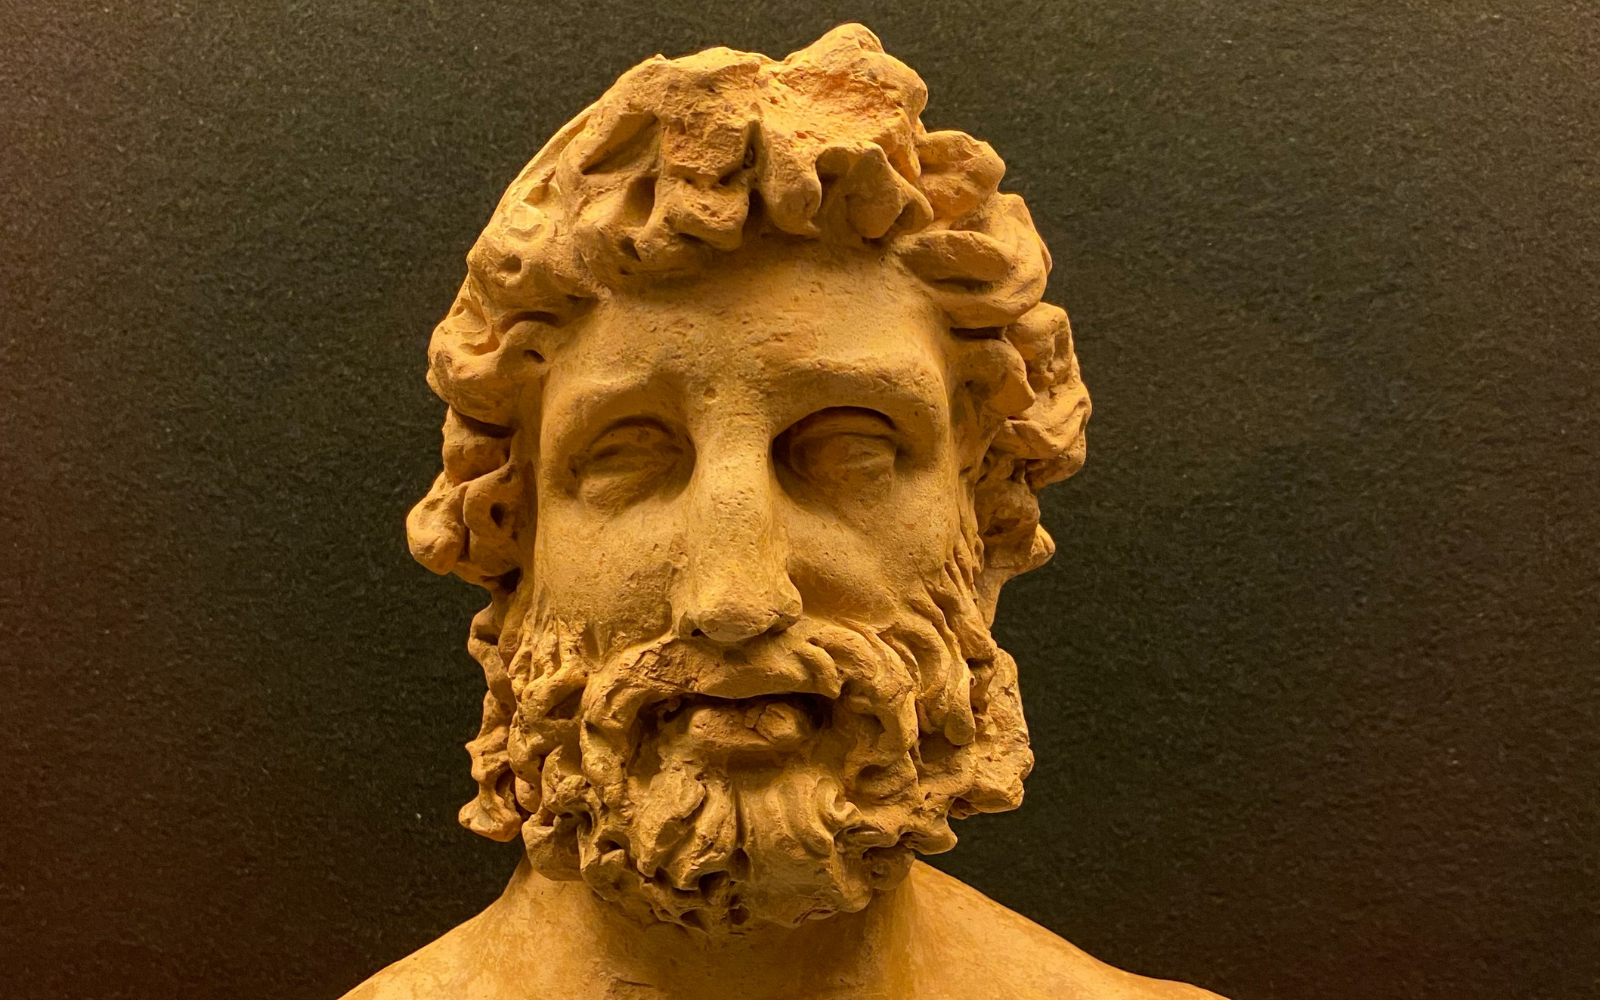 Tinia, el dios etrusco expuesto en el Museo Arqueológico de Chianciano Terme